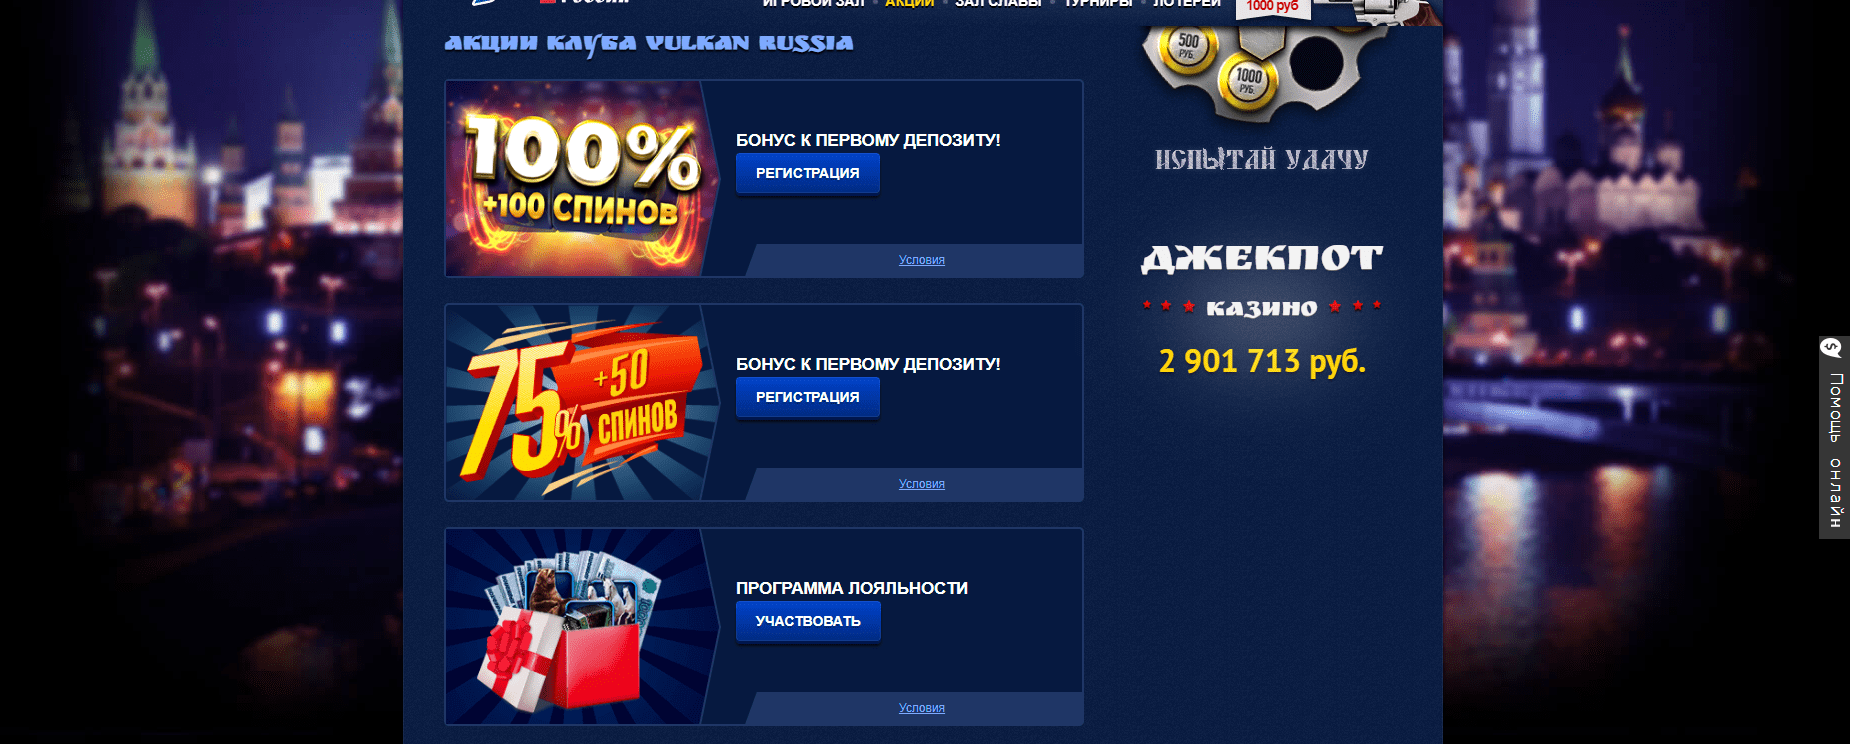 Sitio oficial Vulkan casino